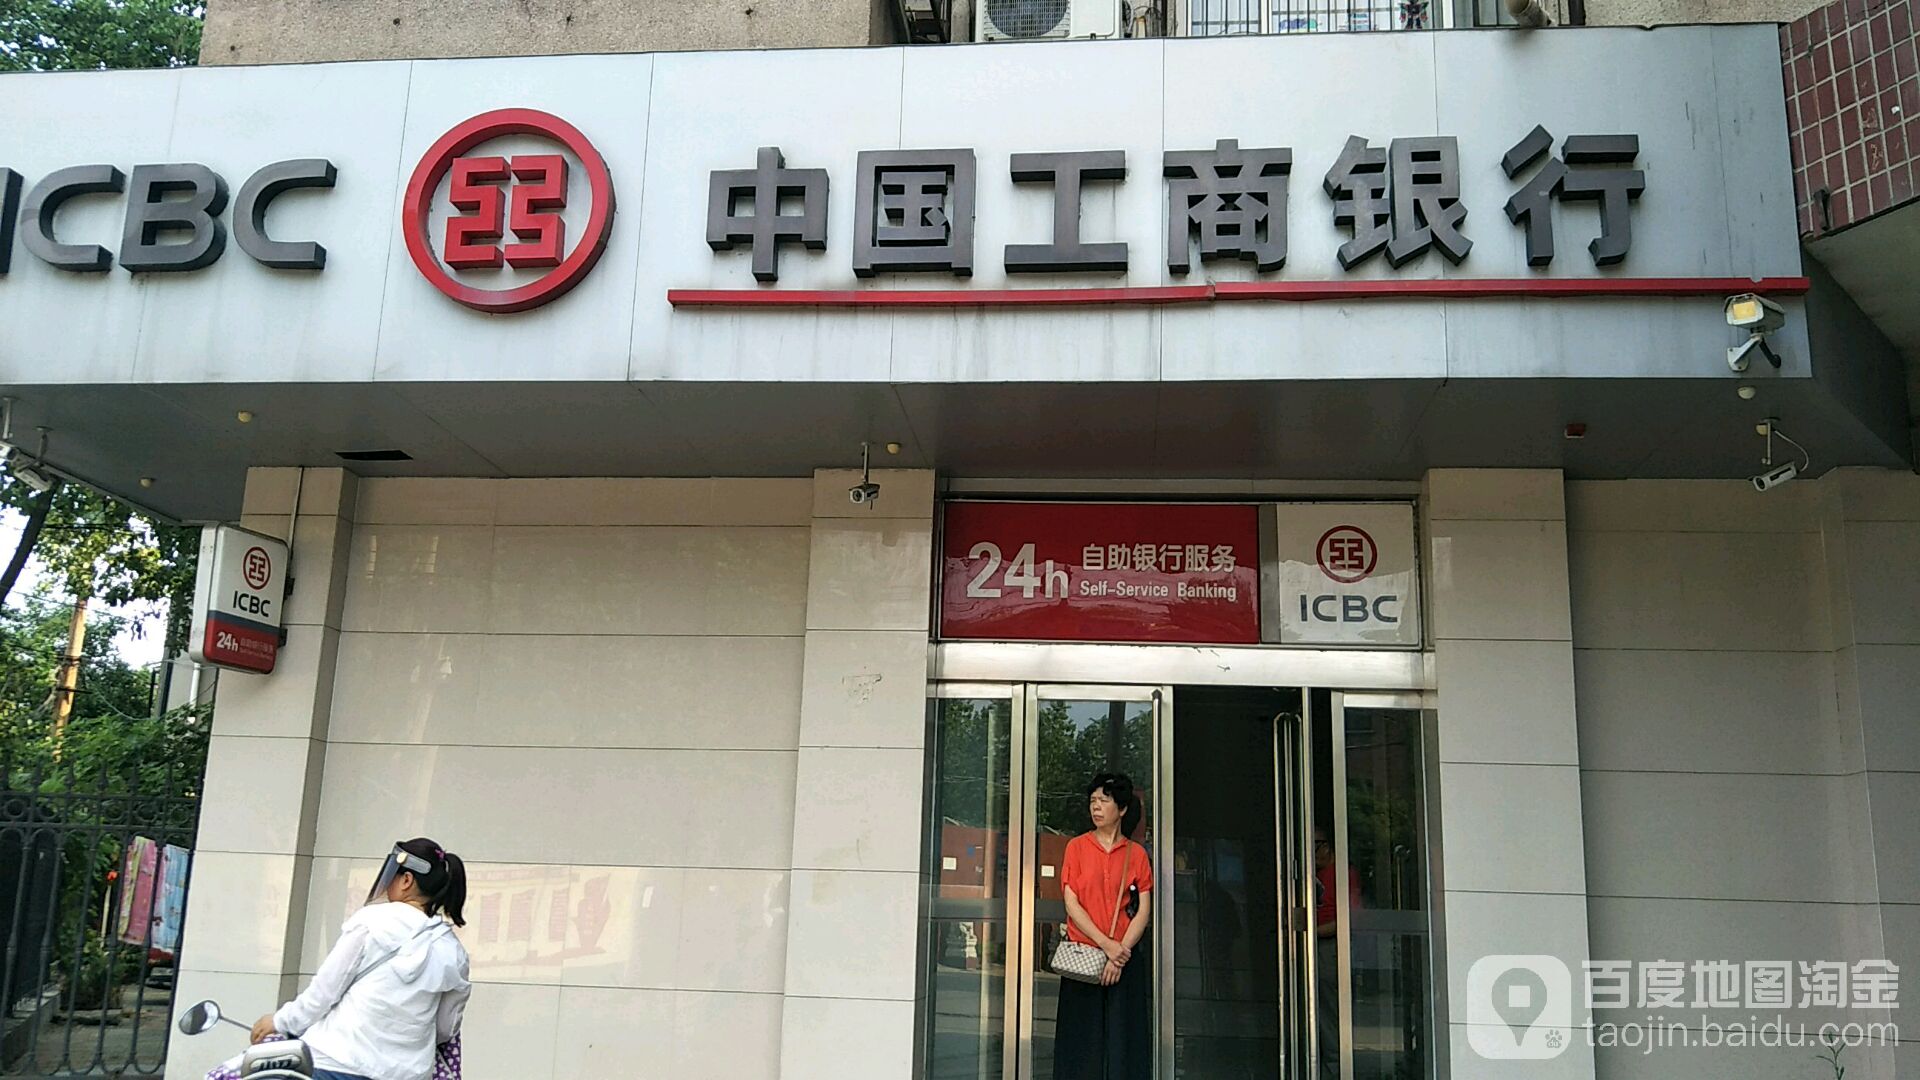 中国工商银行24小时自助银行